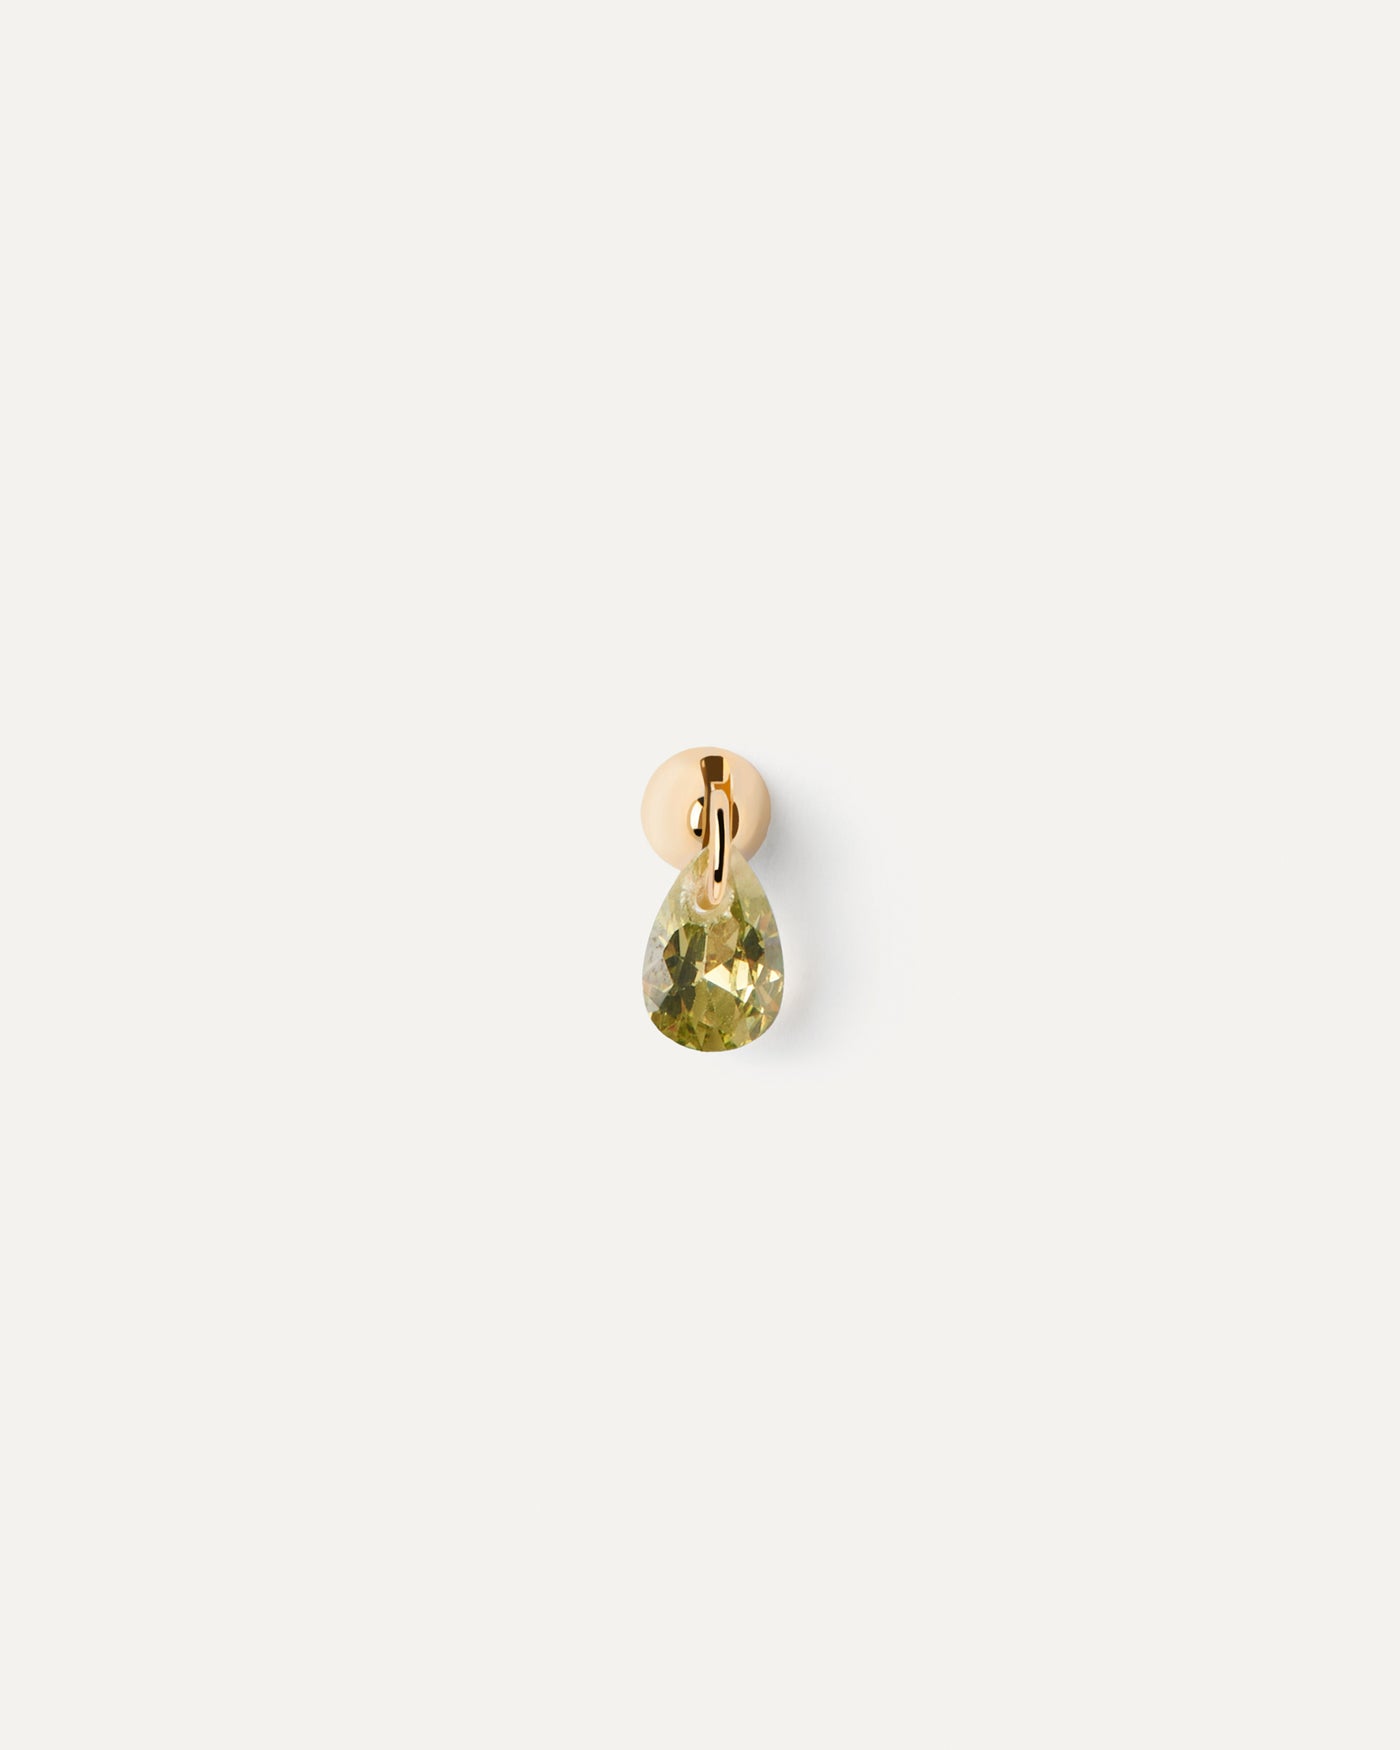 Boucle d'oreille individuelle Lily vert. Clou d'oreille individuel en plaqué or avec un pendentif de zircon verte en forme de goutte. Découvrez les dernières nouveautés de chez PDPAOLA. Commandez et recevez votre bijou en toute sérénité.